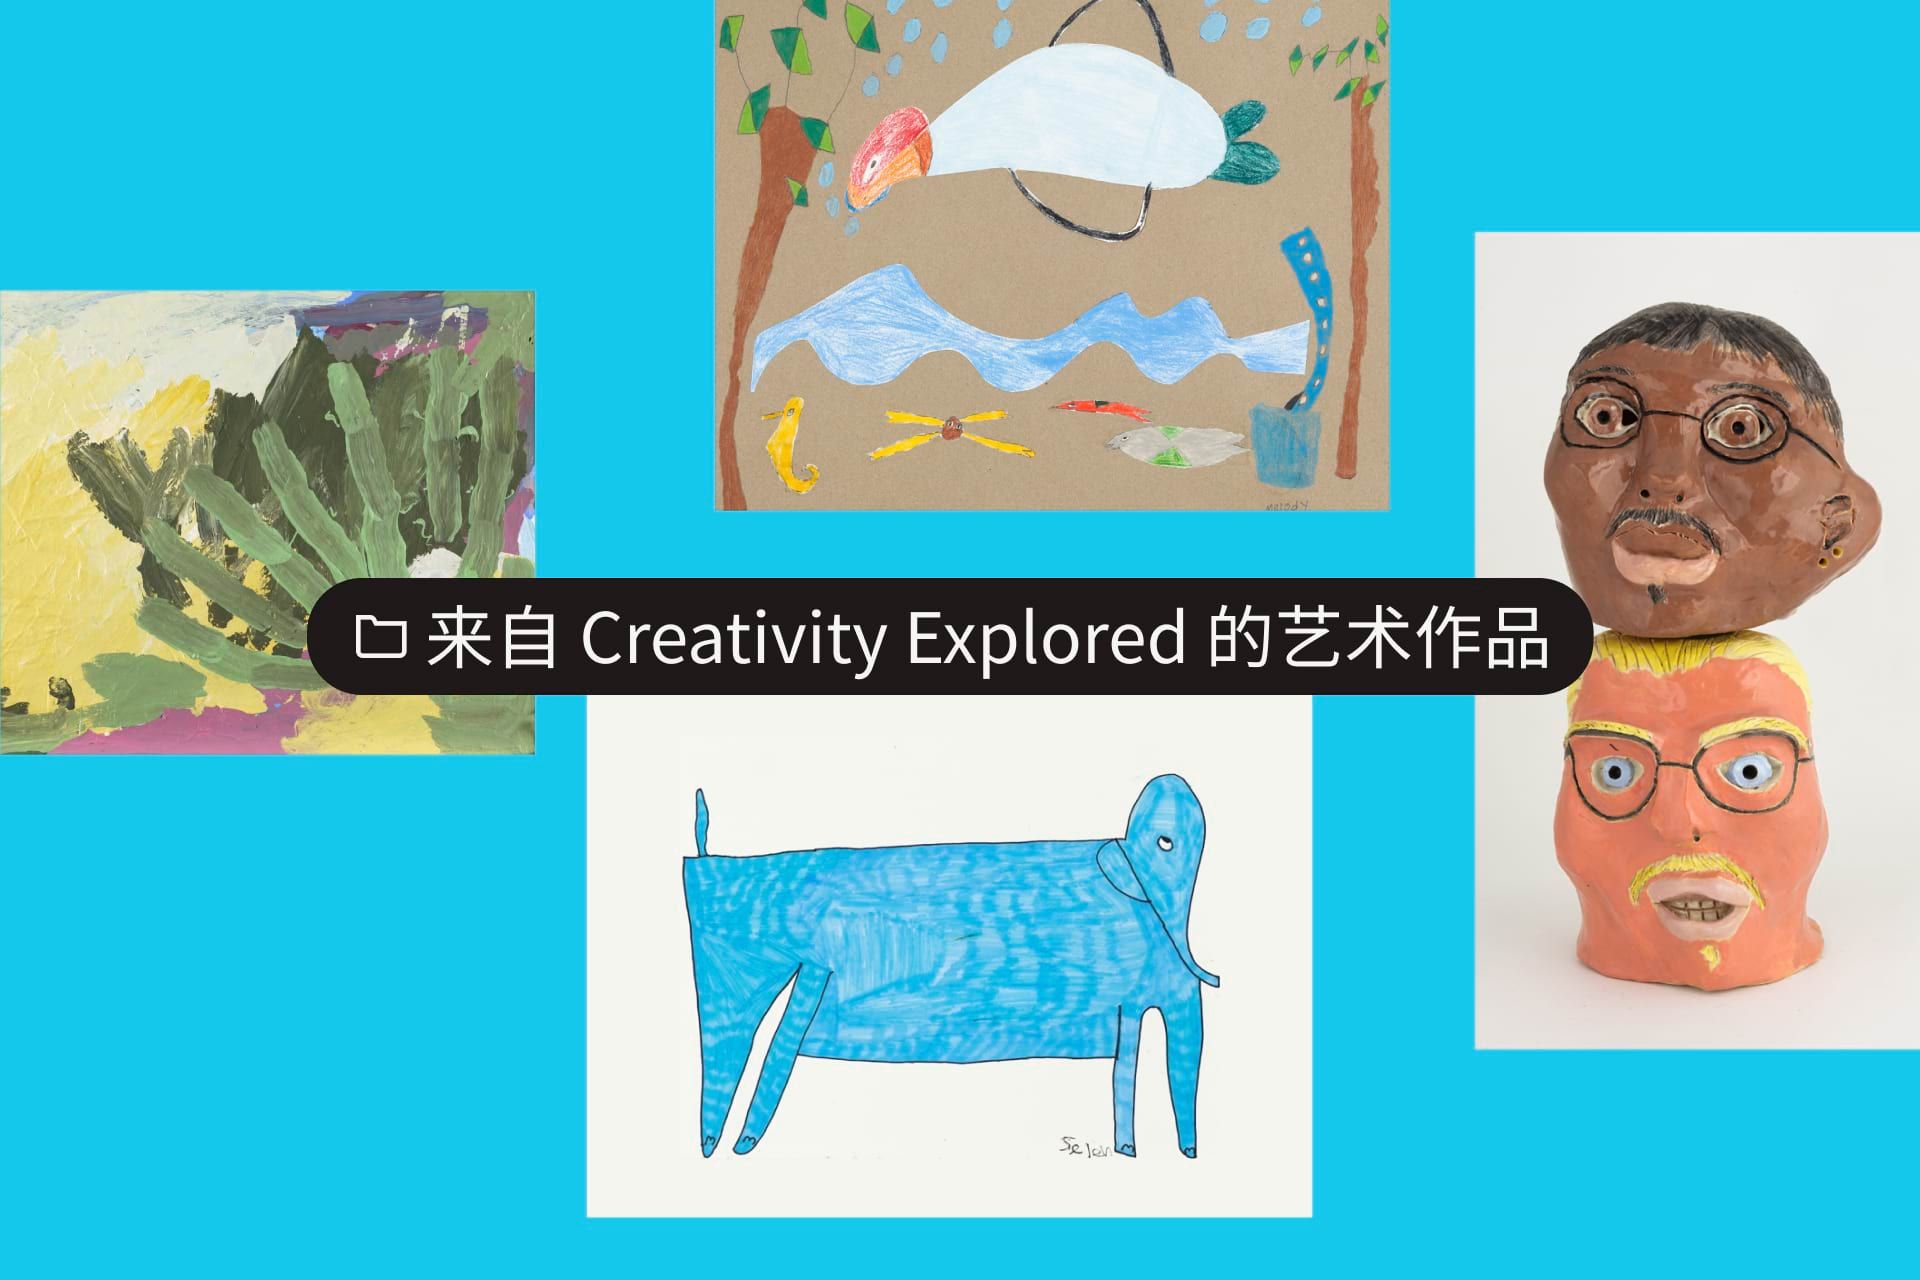 名为 Art from Creativity Exploreed 的文件夹，其中包含四张艺术图片